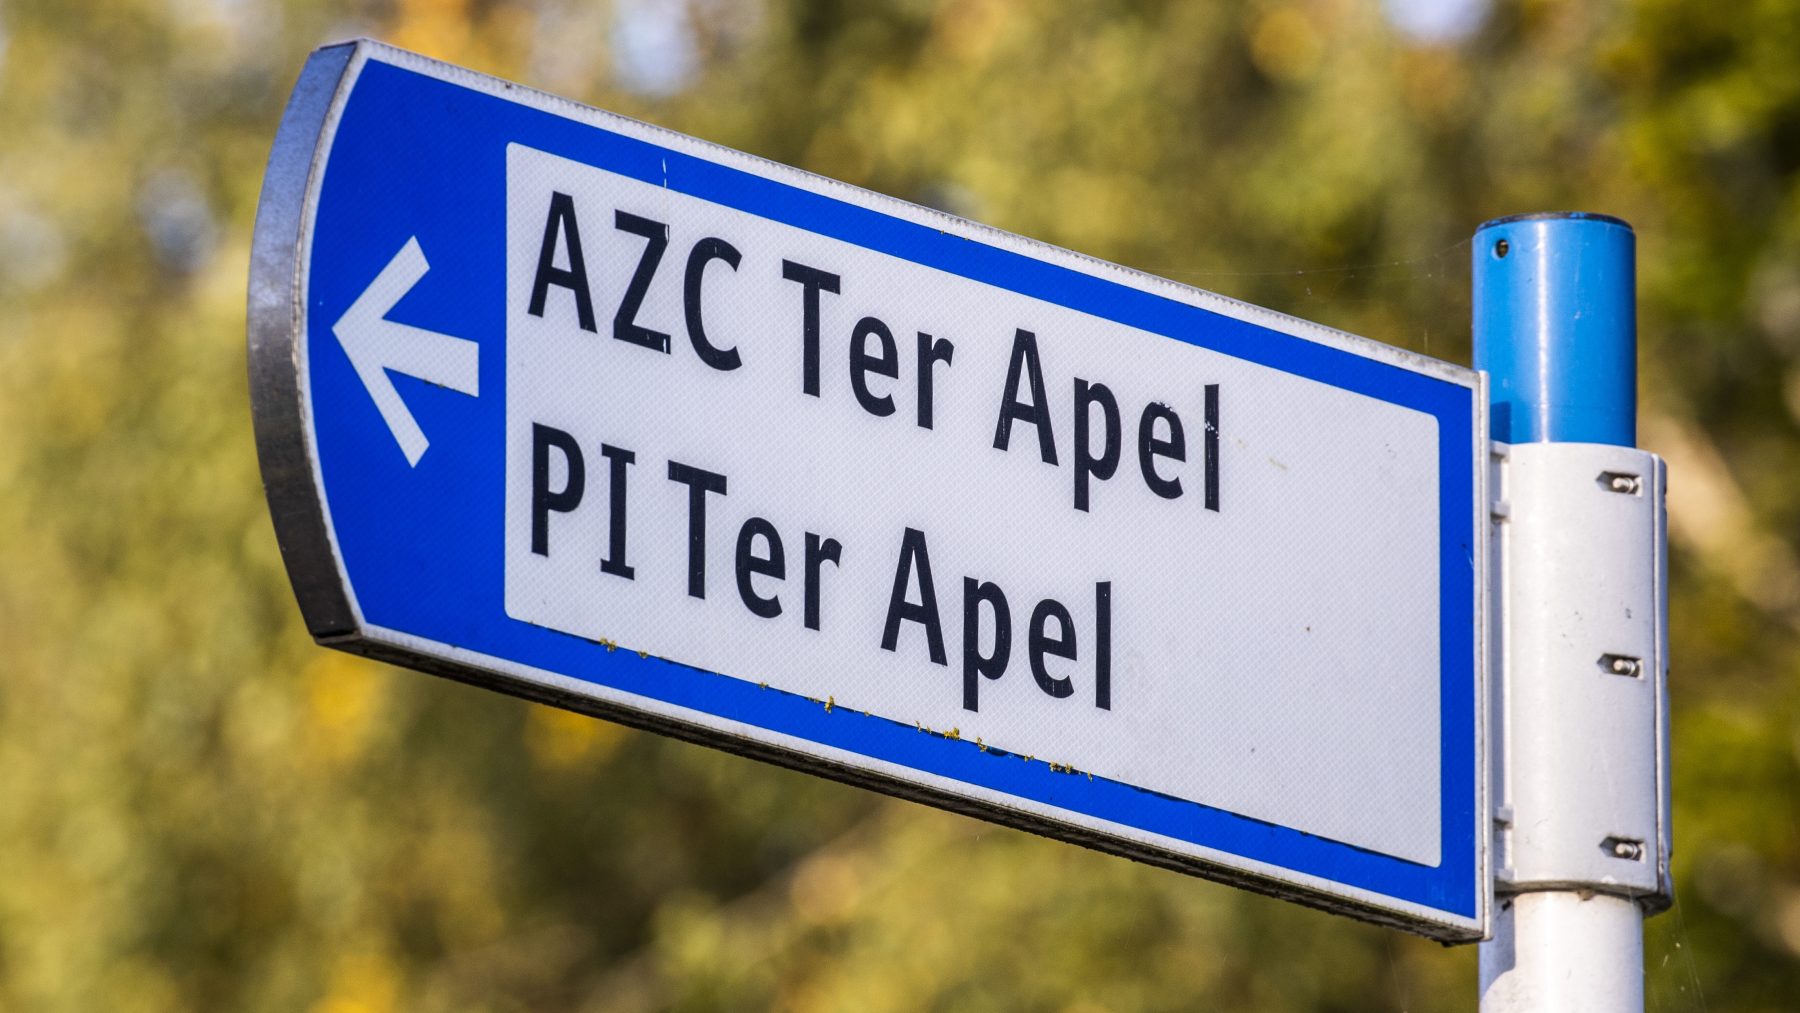 Grens 2000 asielzoekers azc Ter Apel weer bereikt: 'Onacceptabele situatie'